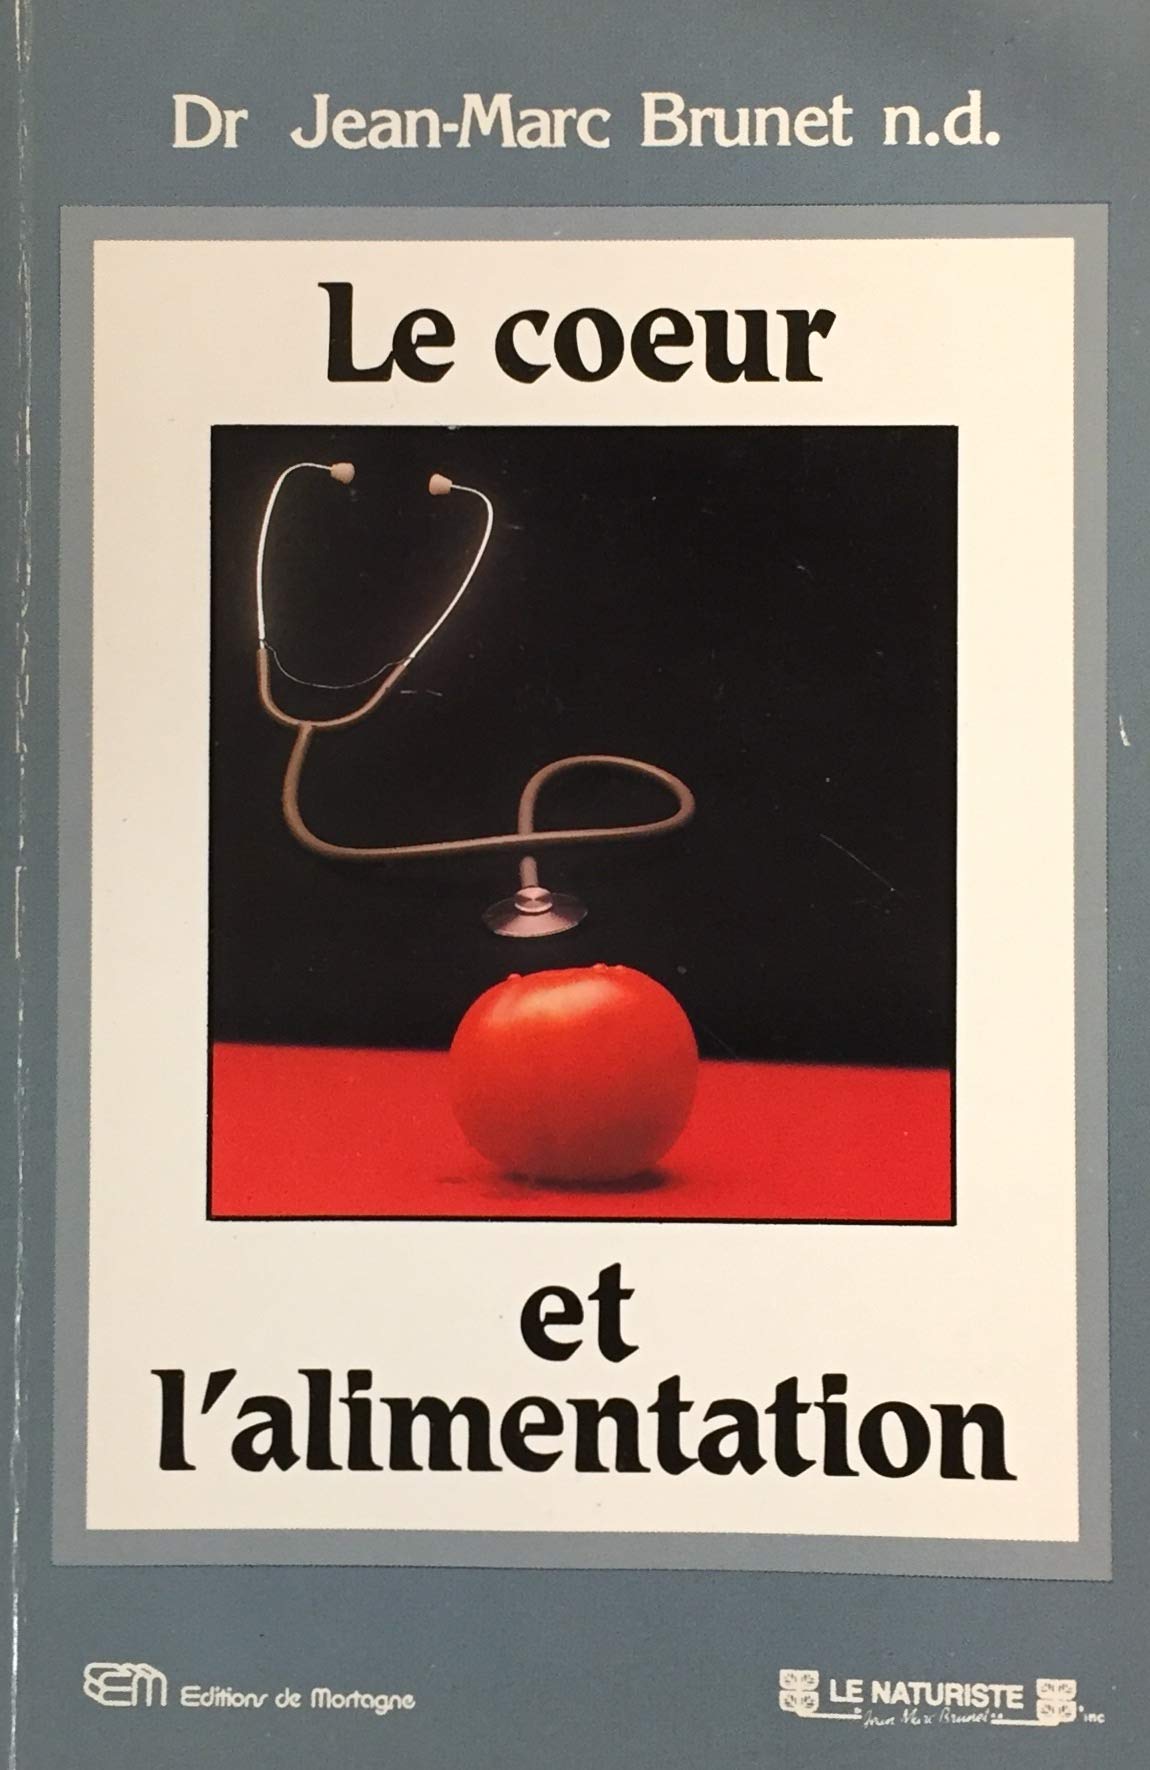 Livre ISBN 2890740498 Le coeur et l'alimentation (Dr Jean-Marc Brunet)